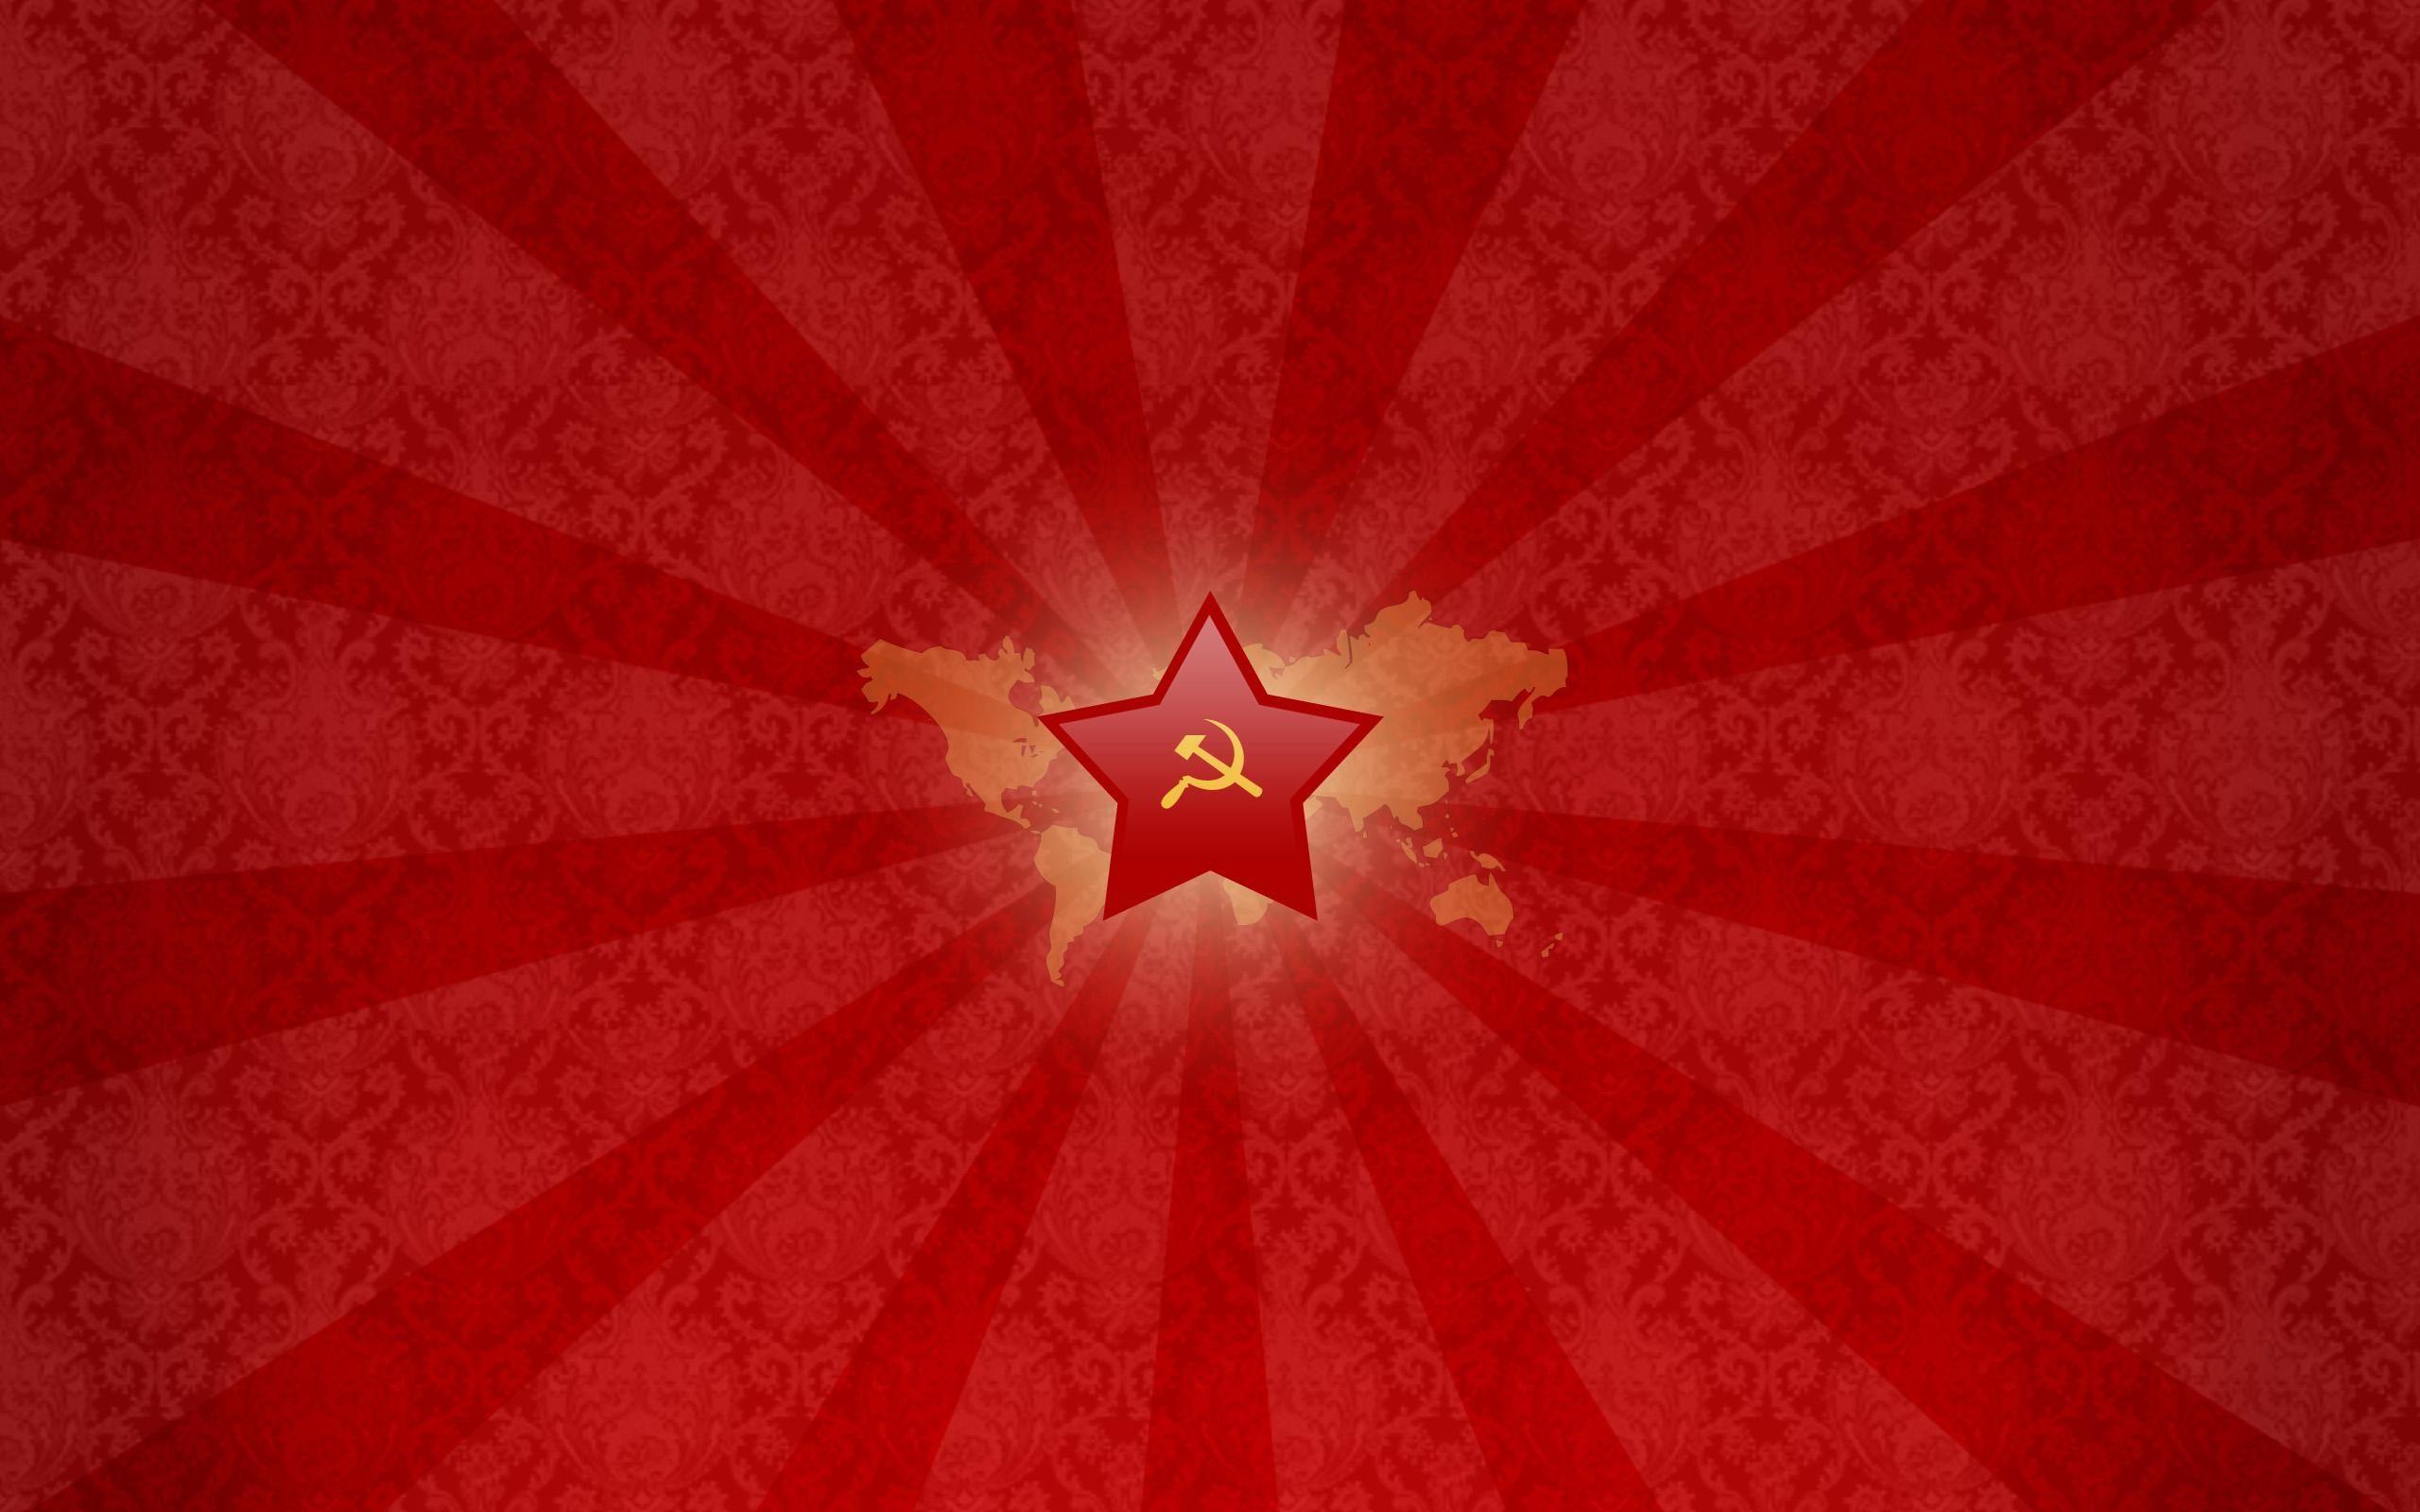 Crimson dawn red star pattern free desktop background